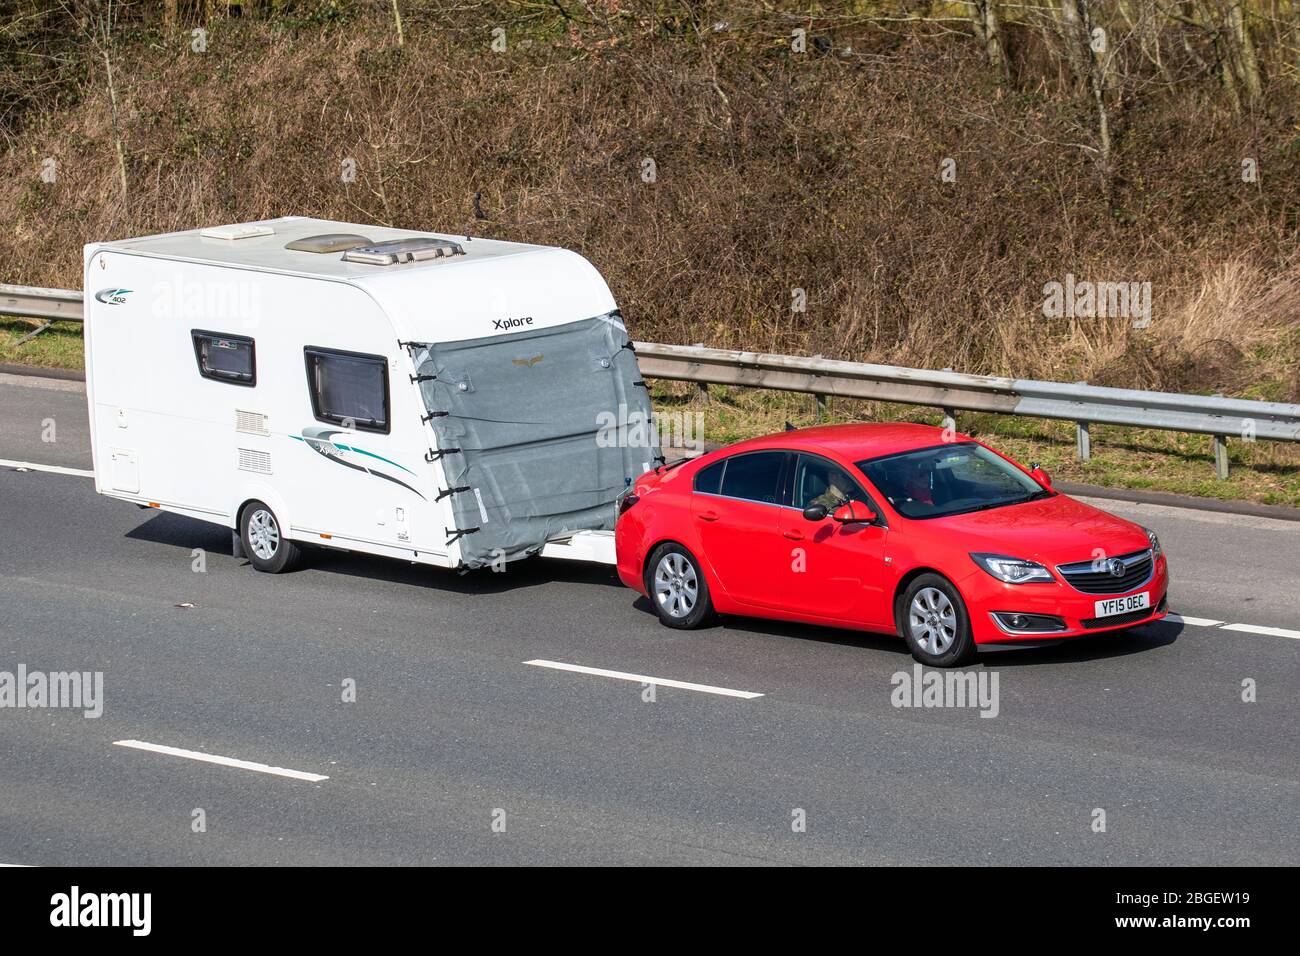 2015 rosso Vauxhall Insignia Sri Nav CDTI Eco trainante Xplore Touring Caravan e Automas, camper, veicolo per il tempo libero RV, vacanze in famiglia, vacanze caravanette, vacanze caravan, la vita sulla strada, Foto Stock